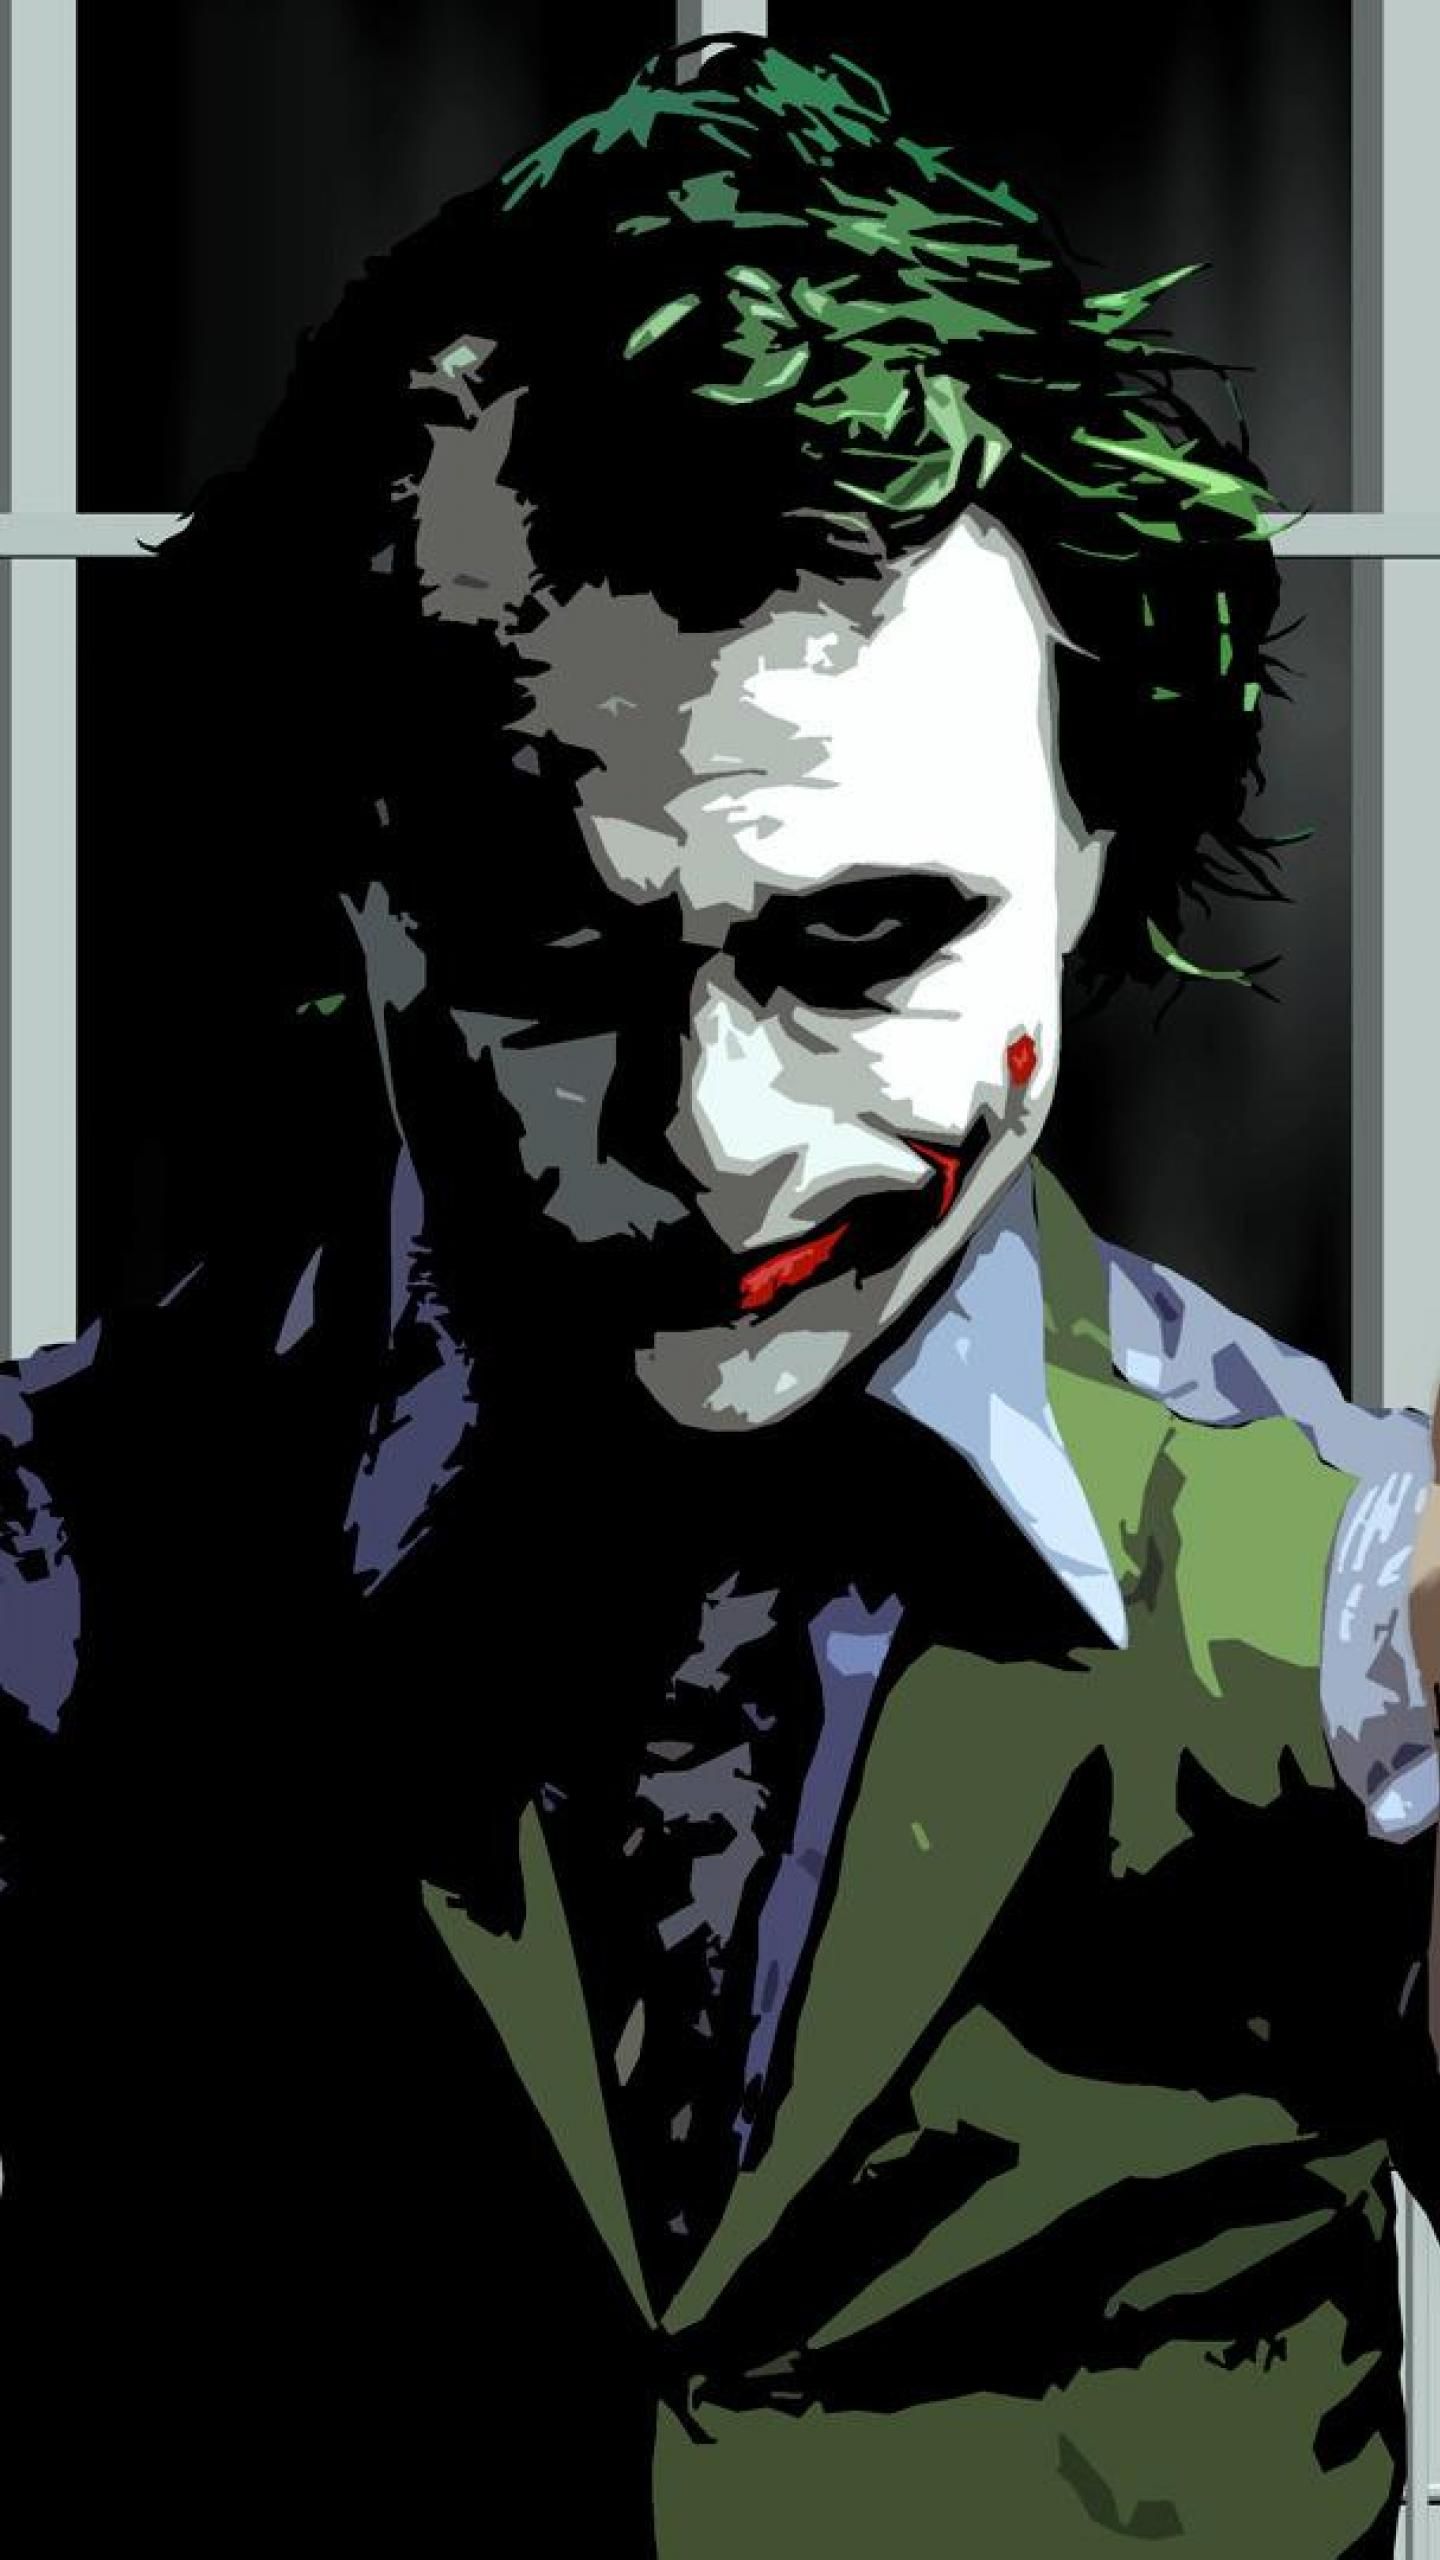 Wallpaper background, Joker, black images for desktop, section мужчины -  download